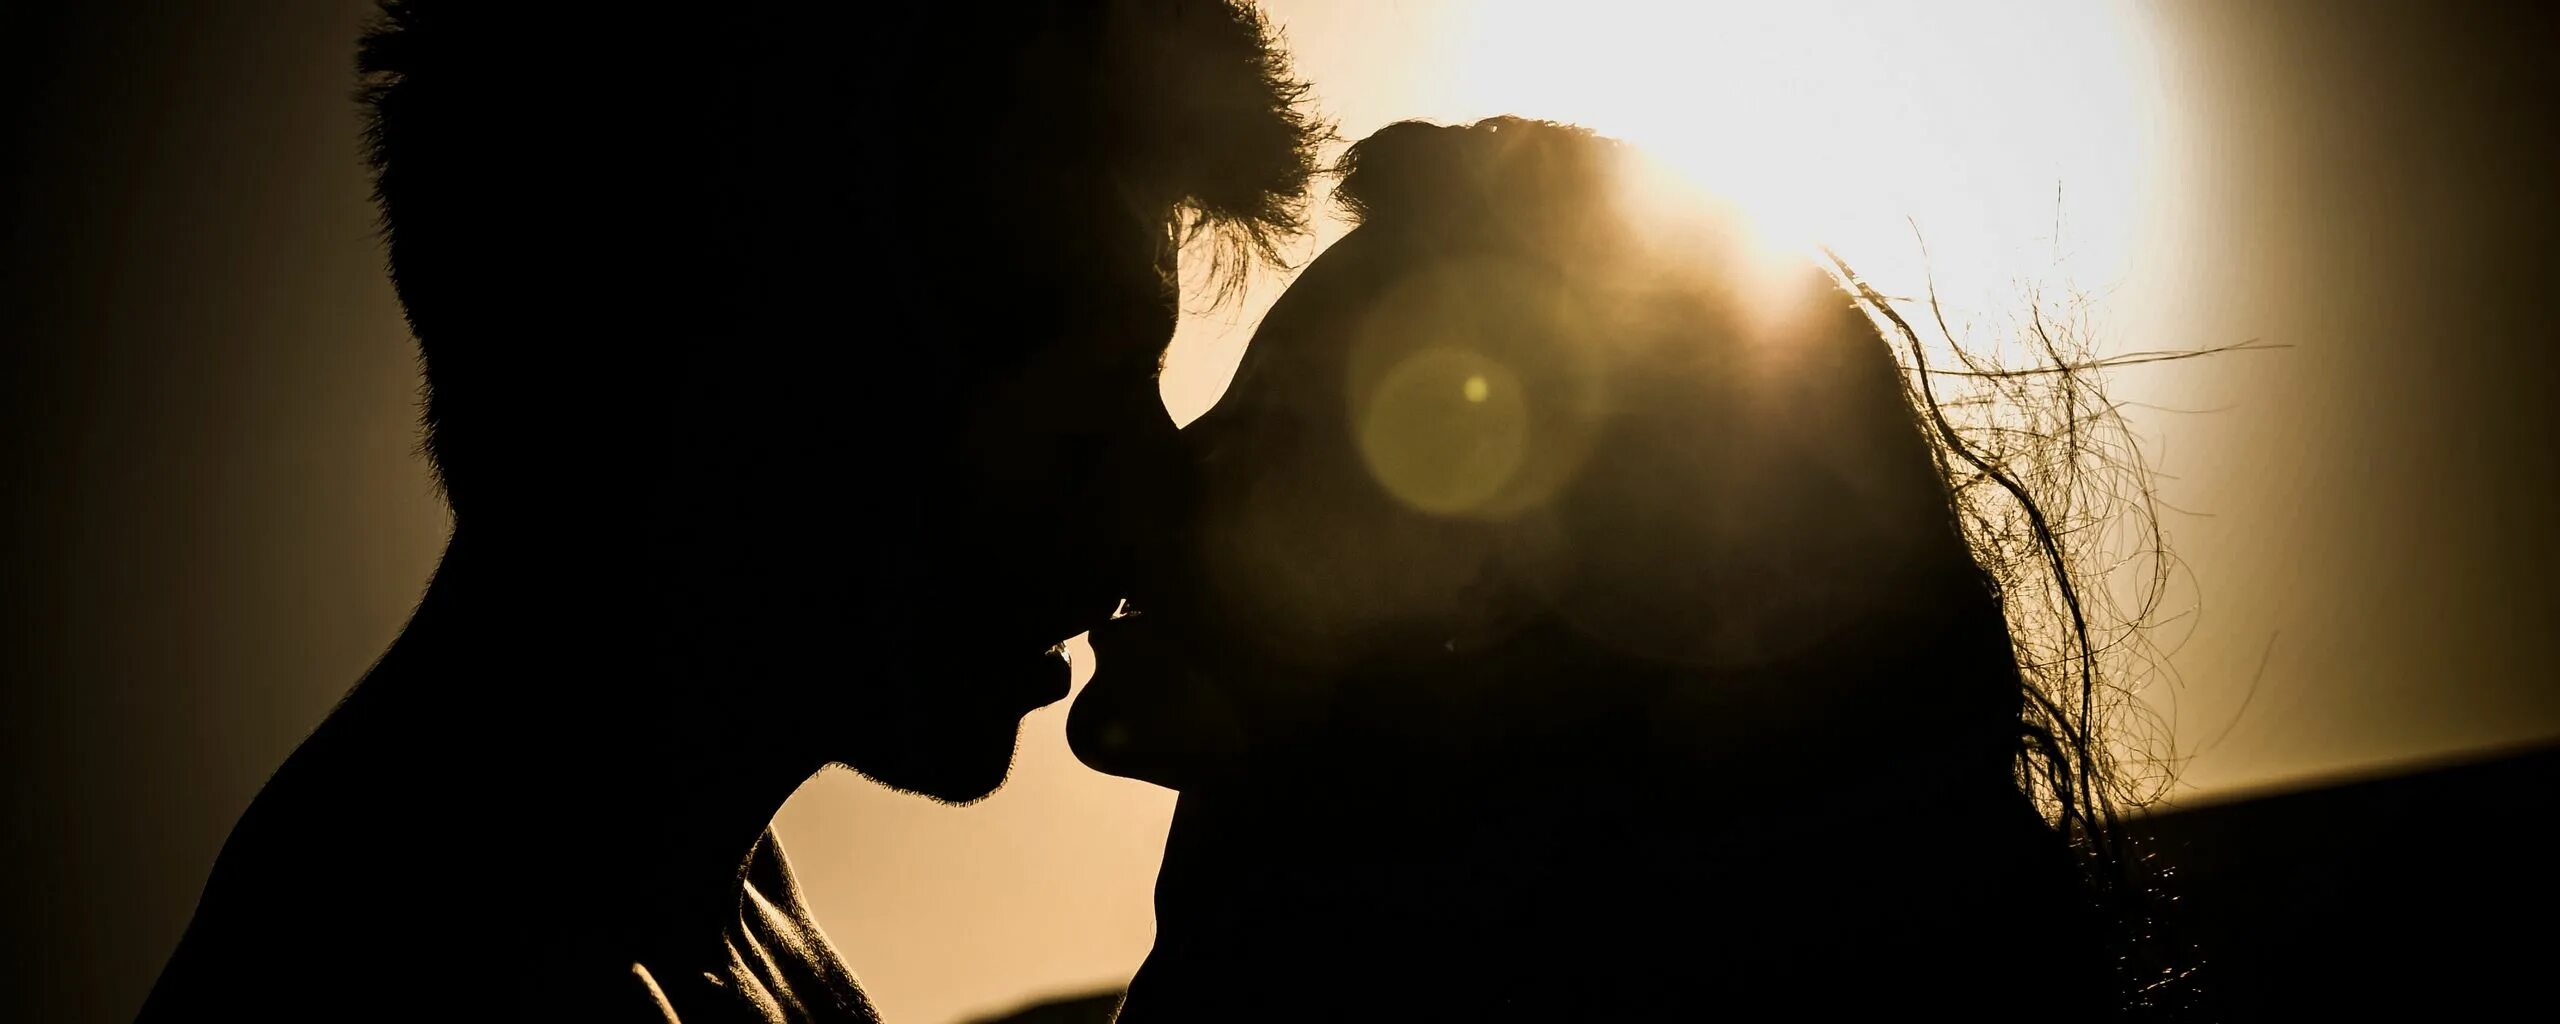 Поцелуй пары. Мужчина и женщина. Картинки про любовь. Обои на рабочий стол поцелуй.